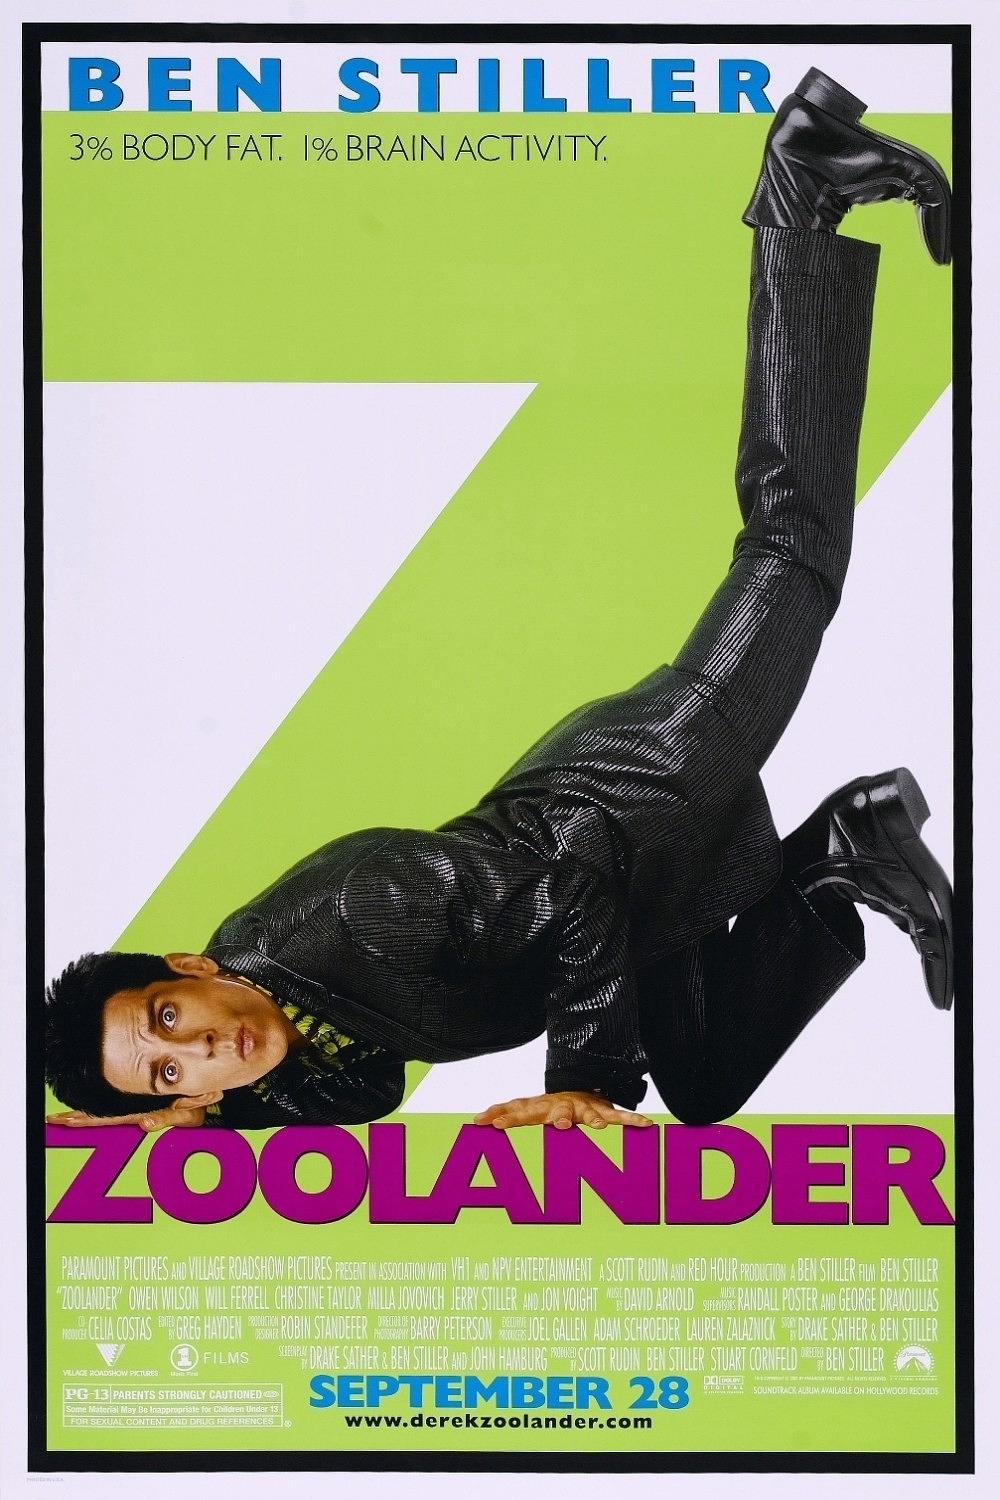 超级名模/名模大特务 Zoolander.2001.1080p.BluRay.x264-CiNEFiLE 6.55GB-1.png